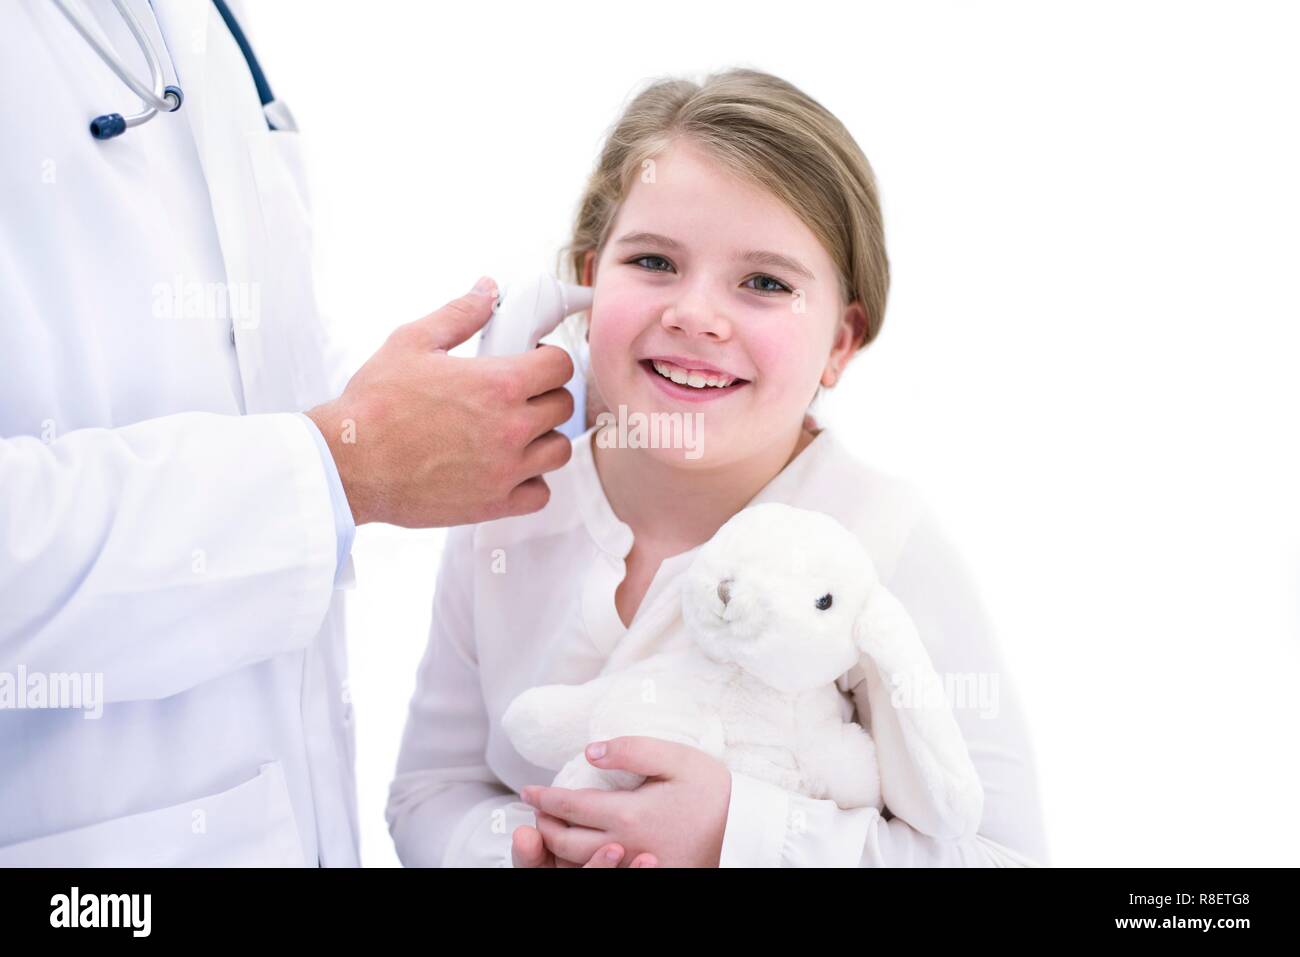 Médecin de prendre la température de la jeune fille à l'aide d'un thermomètre digital Banque D'Images